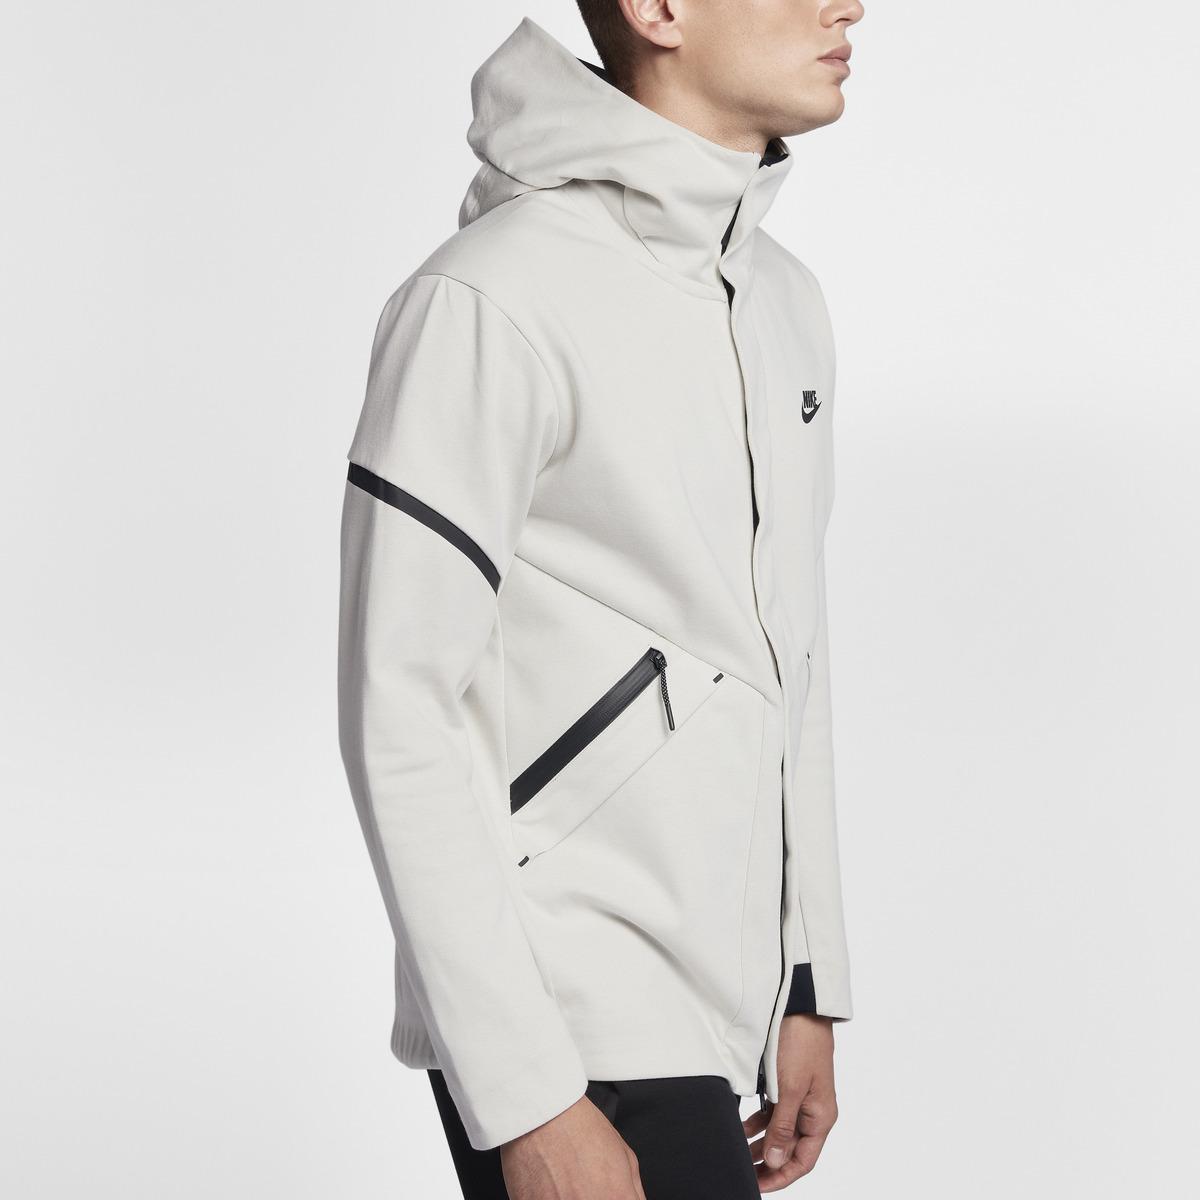 Nike Sportswear Tech Fleece Windrunner Jacket in Grey (Gray) for Men - Lyst